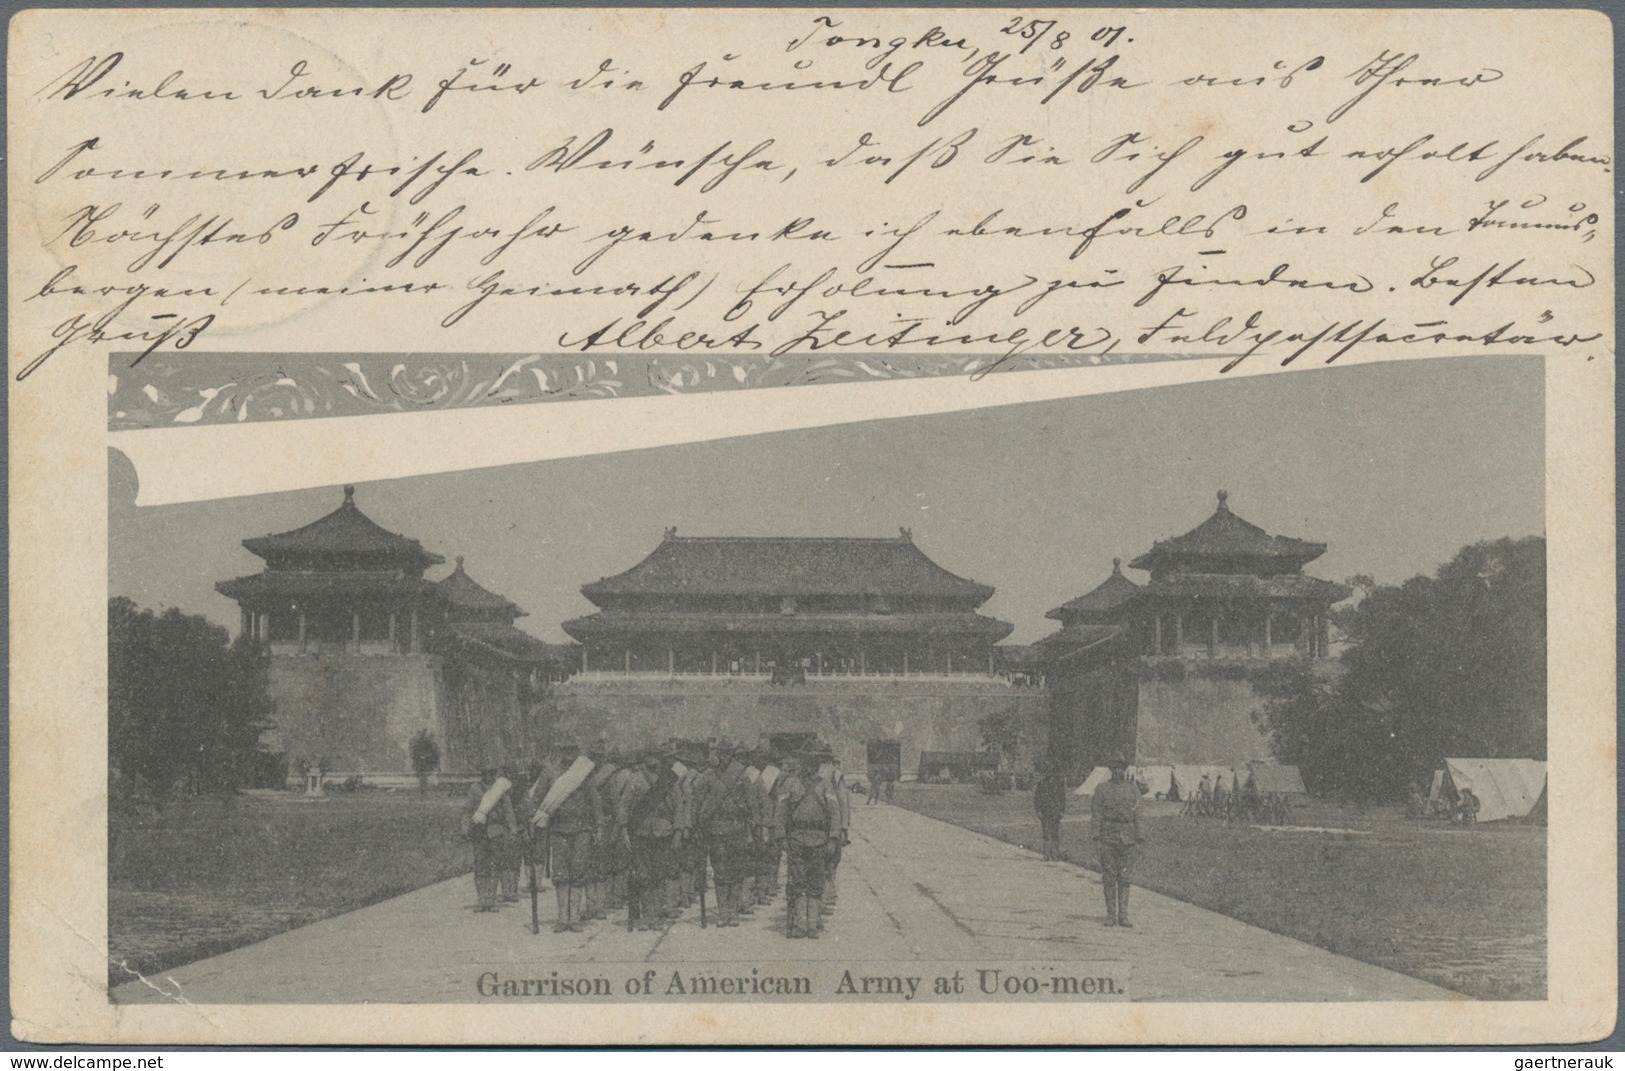 Deutsche Post In China - Stempel: 1901 (25.8.), "KAISERLICH DEUTSCHE BAHNPOST PEKING TAKU ***", Klar - China (offices)